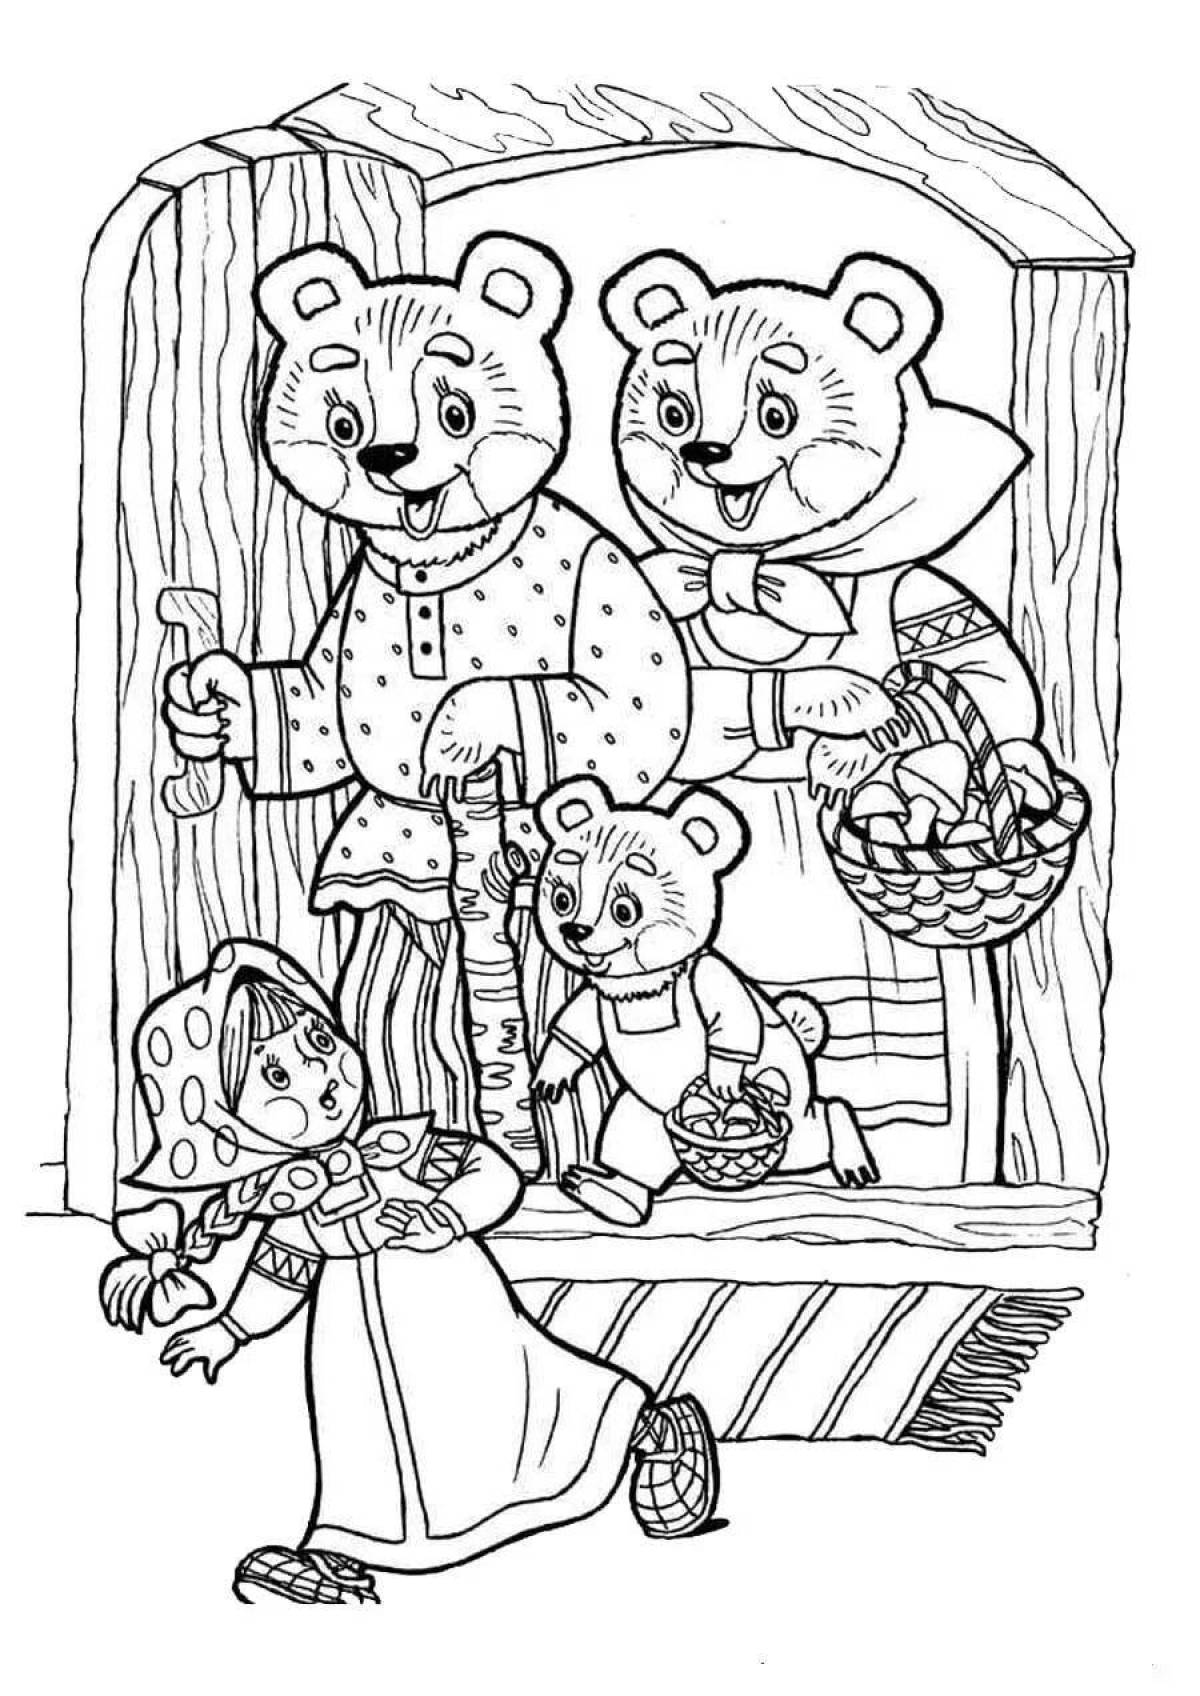 Радостная раскраска маша и медведь сказка для детей